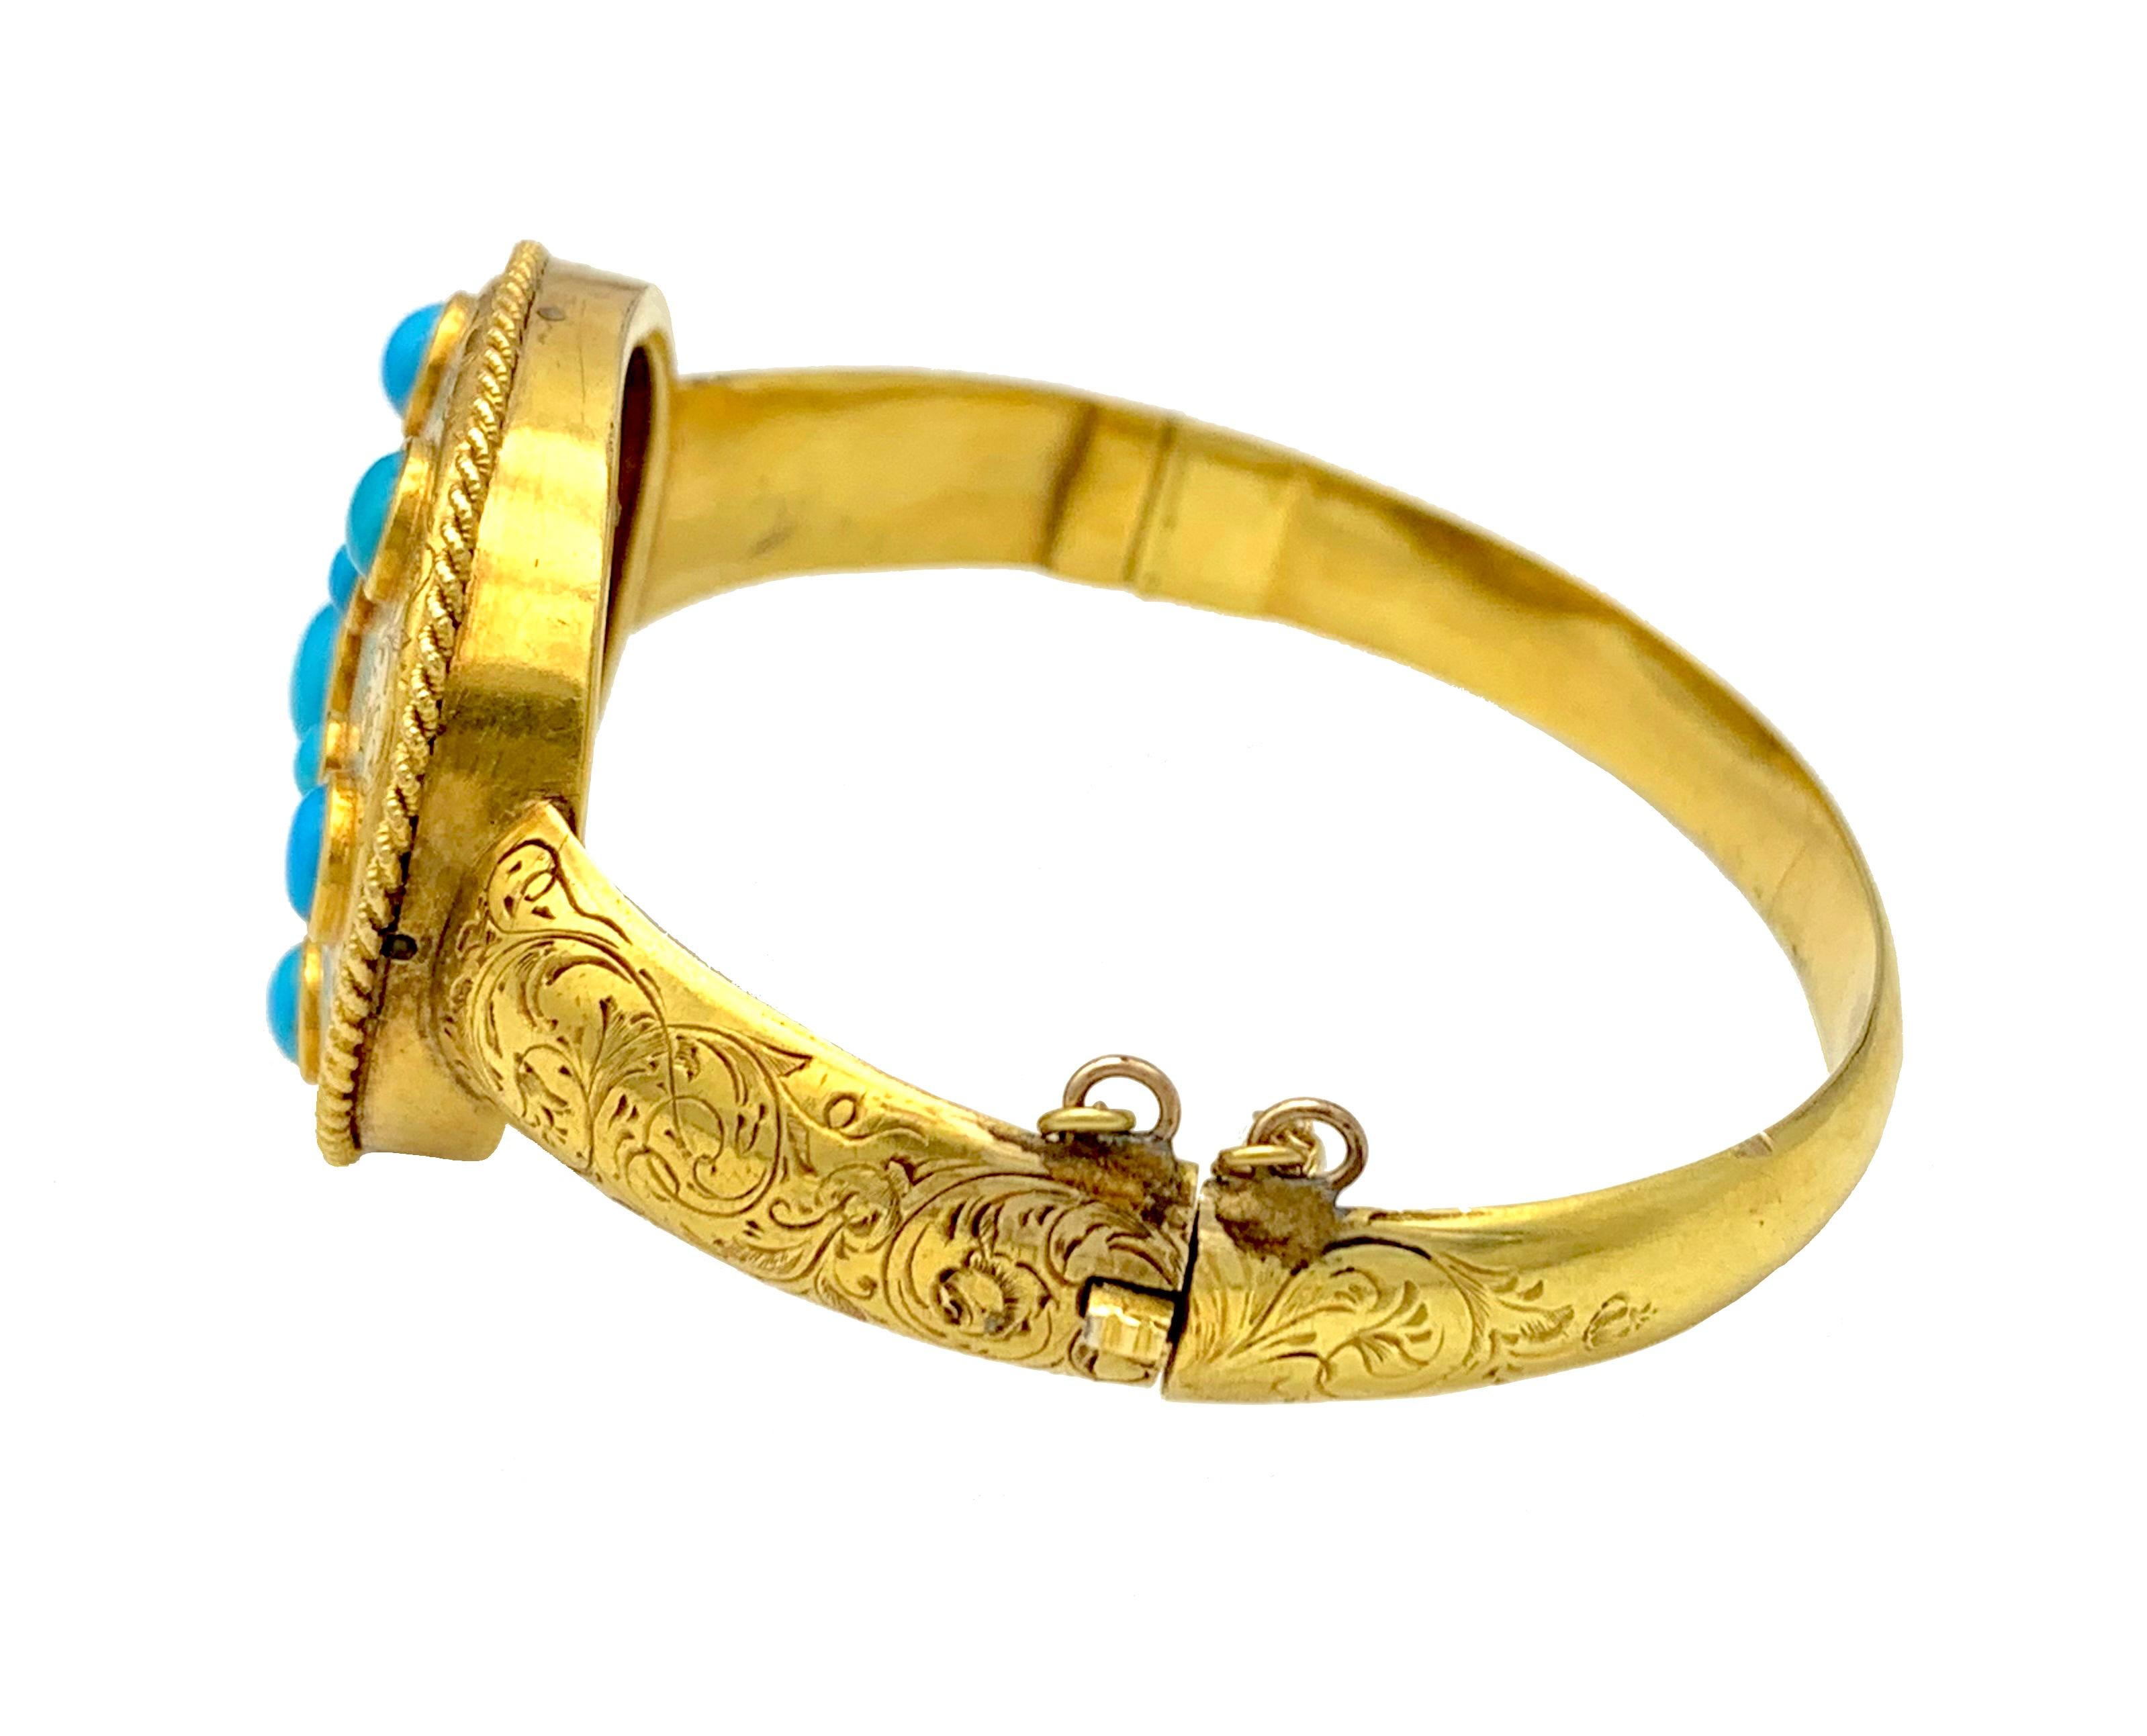 Ce bracelet en or exquis représente une étoile faite d'un cabochon de turquoise fine dans un cadre ovale entouré de fil d'or torsadé. Le bracelet est décoré d'une fine gravure à la main. Le bijou a été fabriqué en 1845 ca et a survécu à près de 180